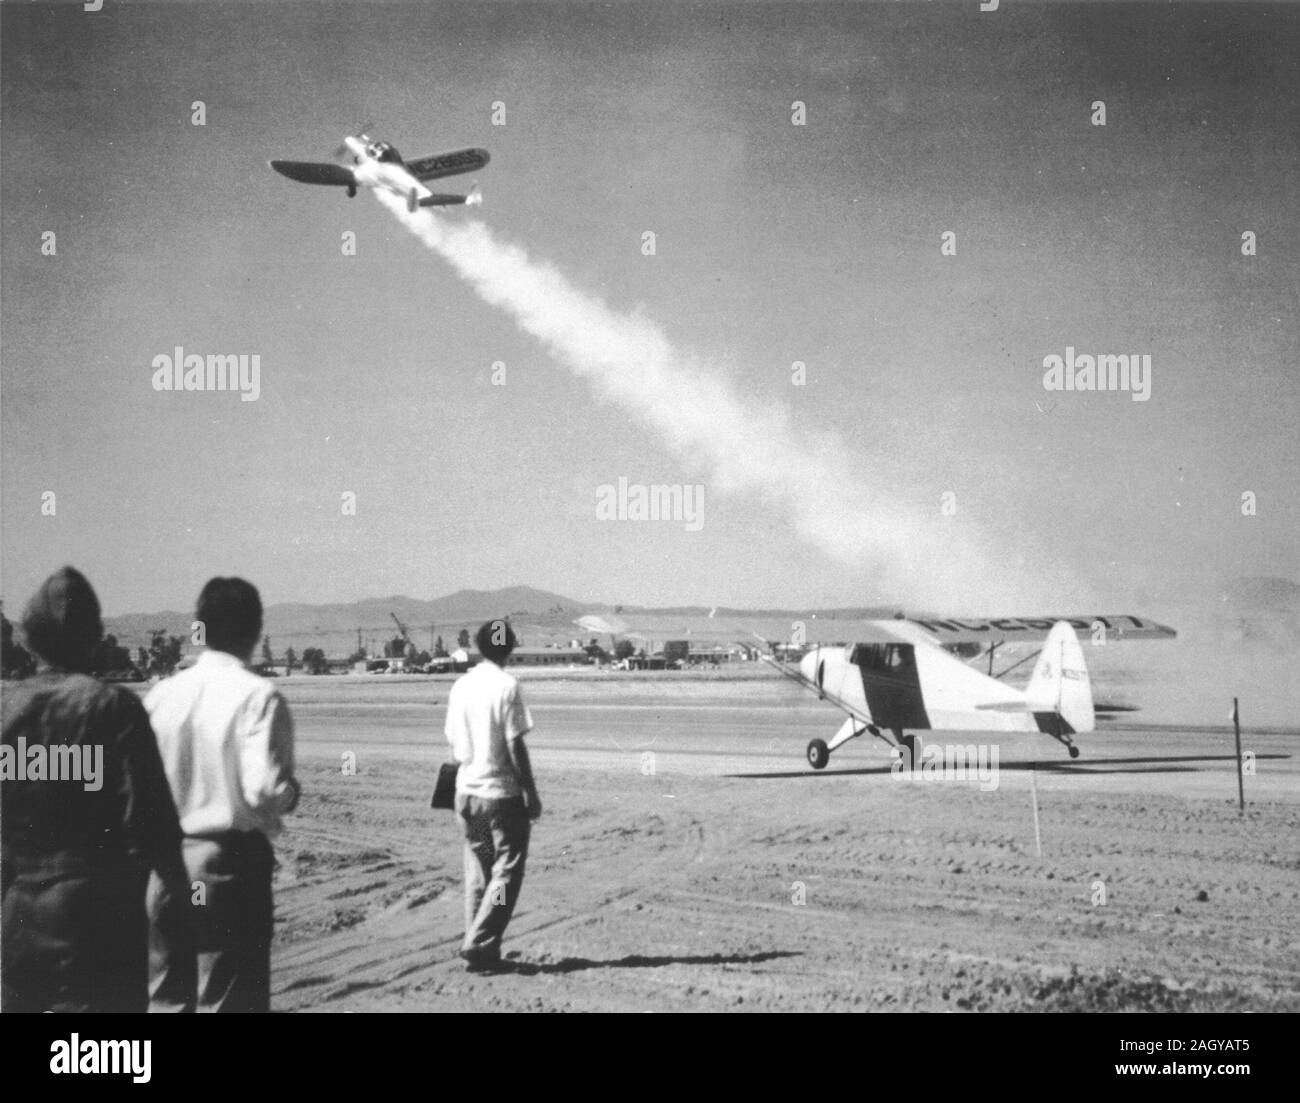 Décollage d'America's first 'Rocket' assistée à l'avion, un Ercoupé équipé d'un propulseur solide développé GALCIT poussée de 28 livres JATO (Jet de force de rappel assisté) Banque D'Images